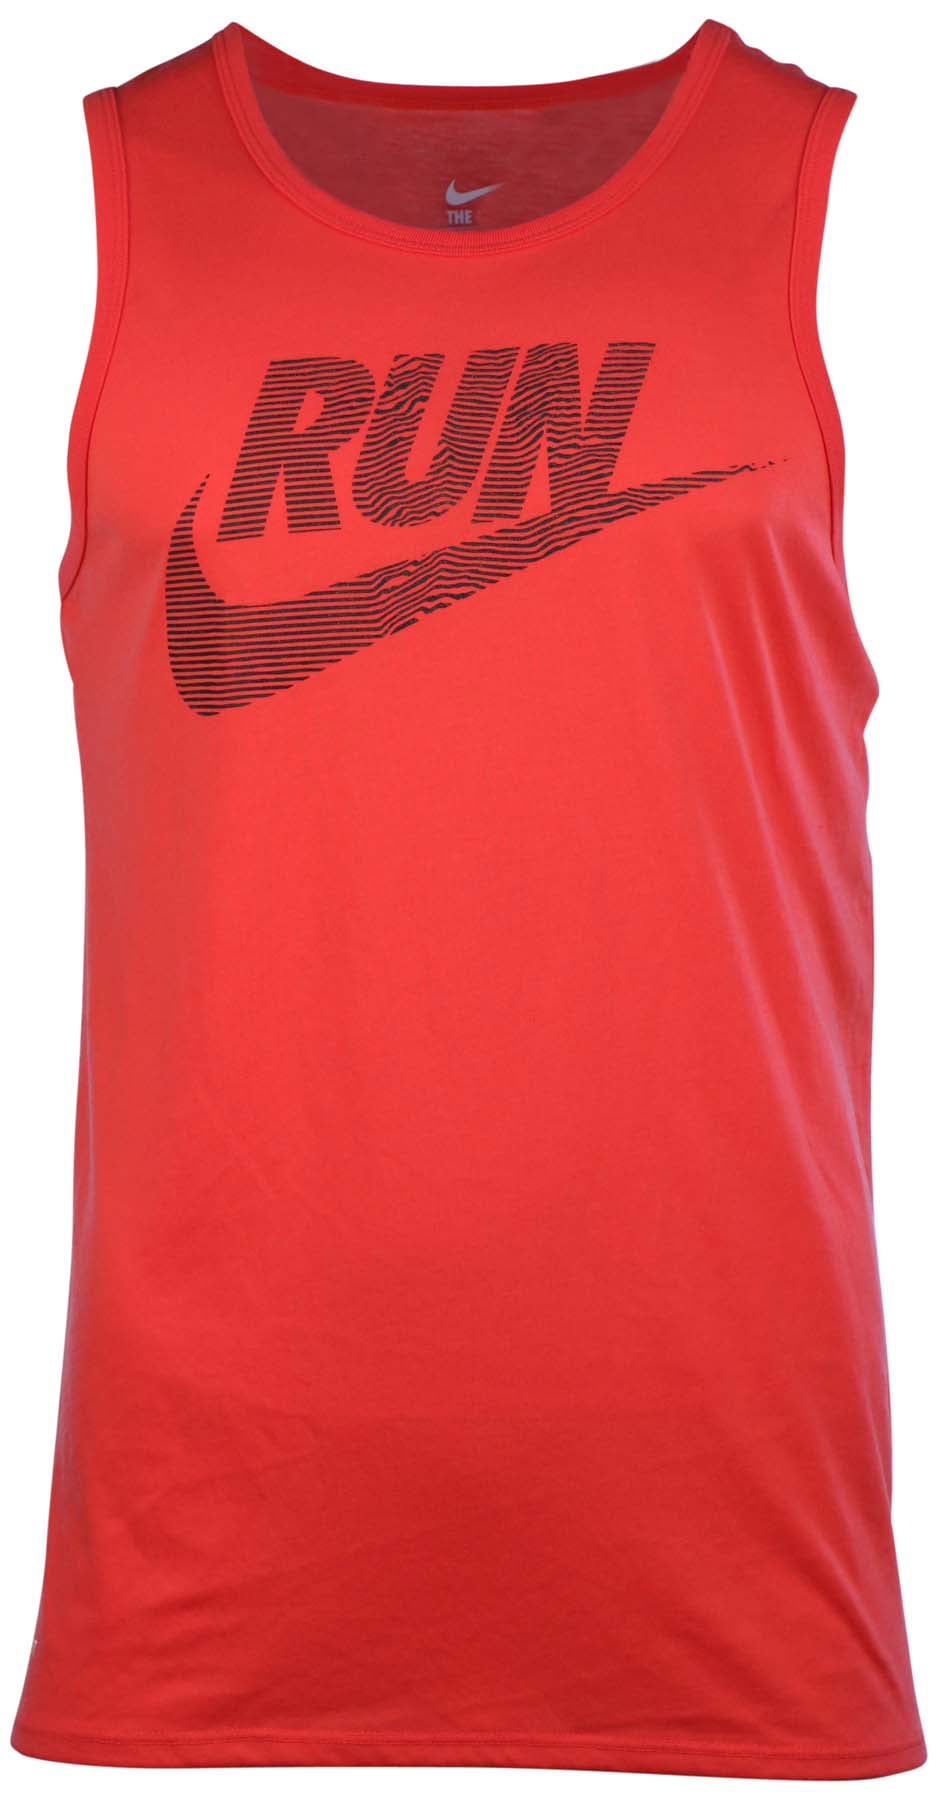 Nike Men's Dri-Fit Swoosh Running Tank Top-Daring Red - Walmart.com